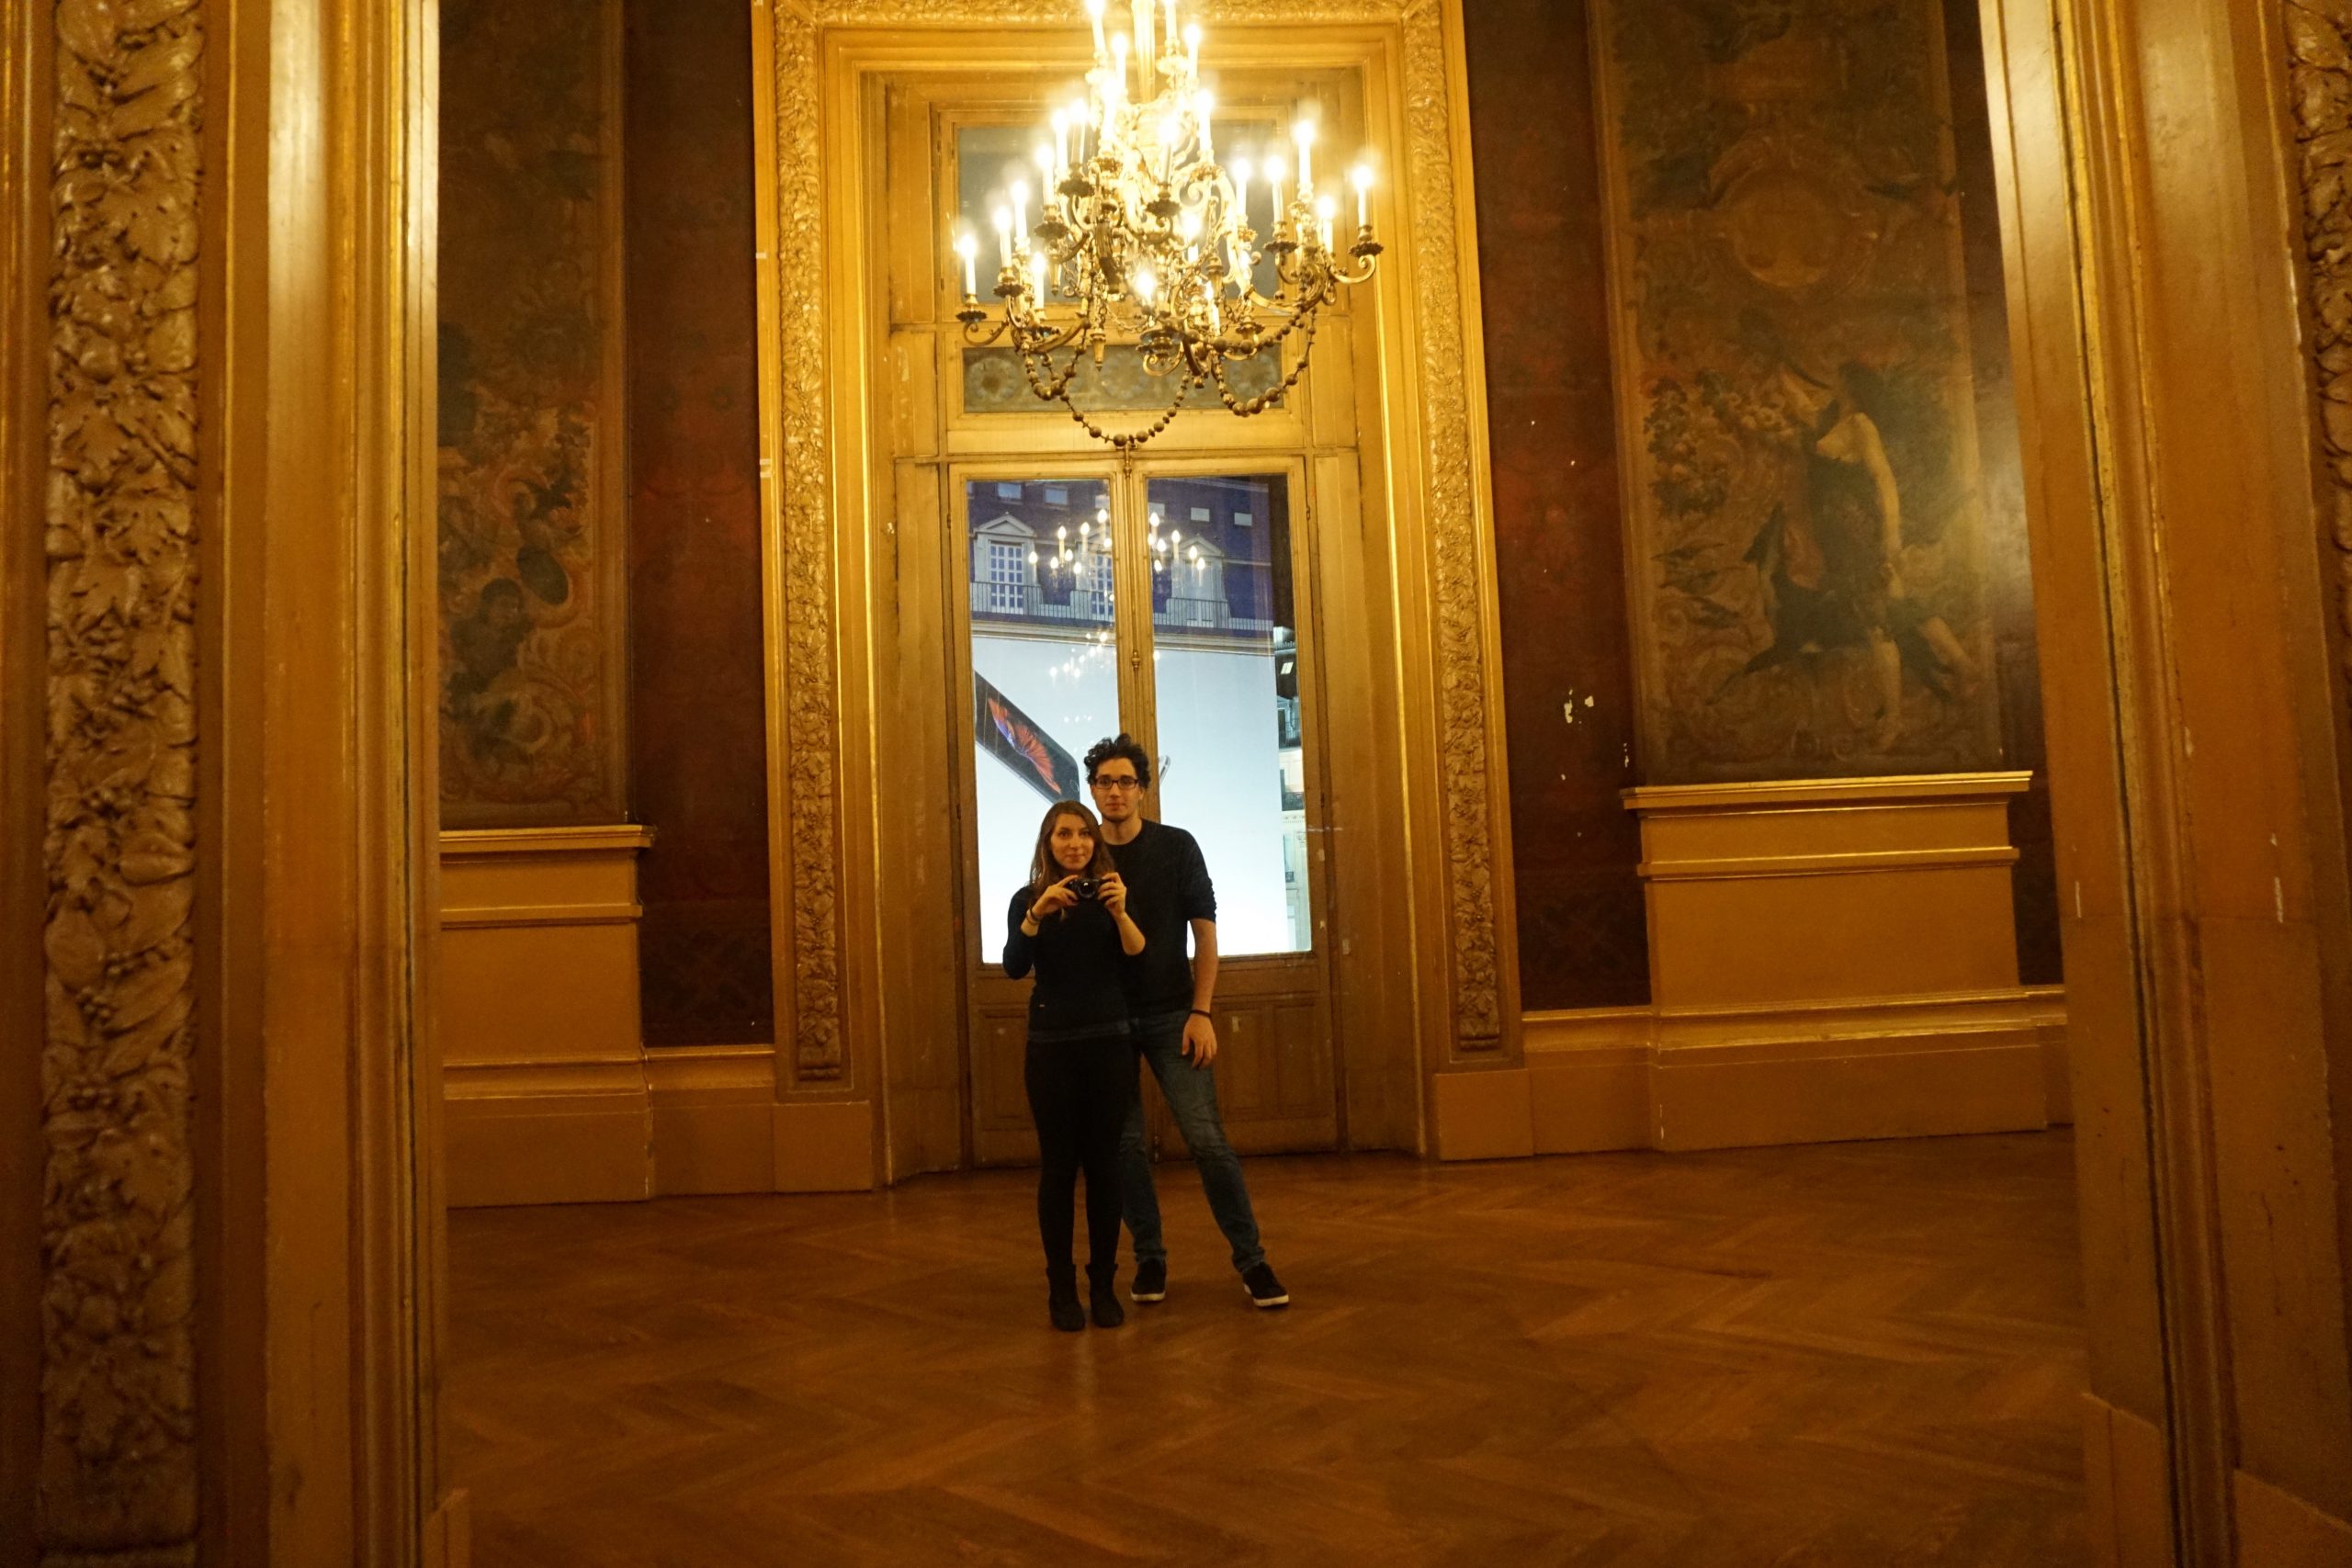 Walking around Palais Garnier before the show starts